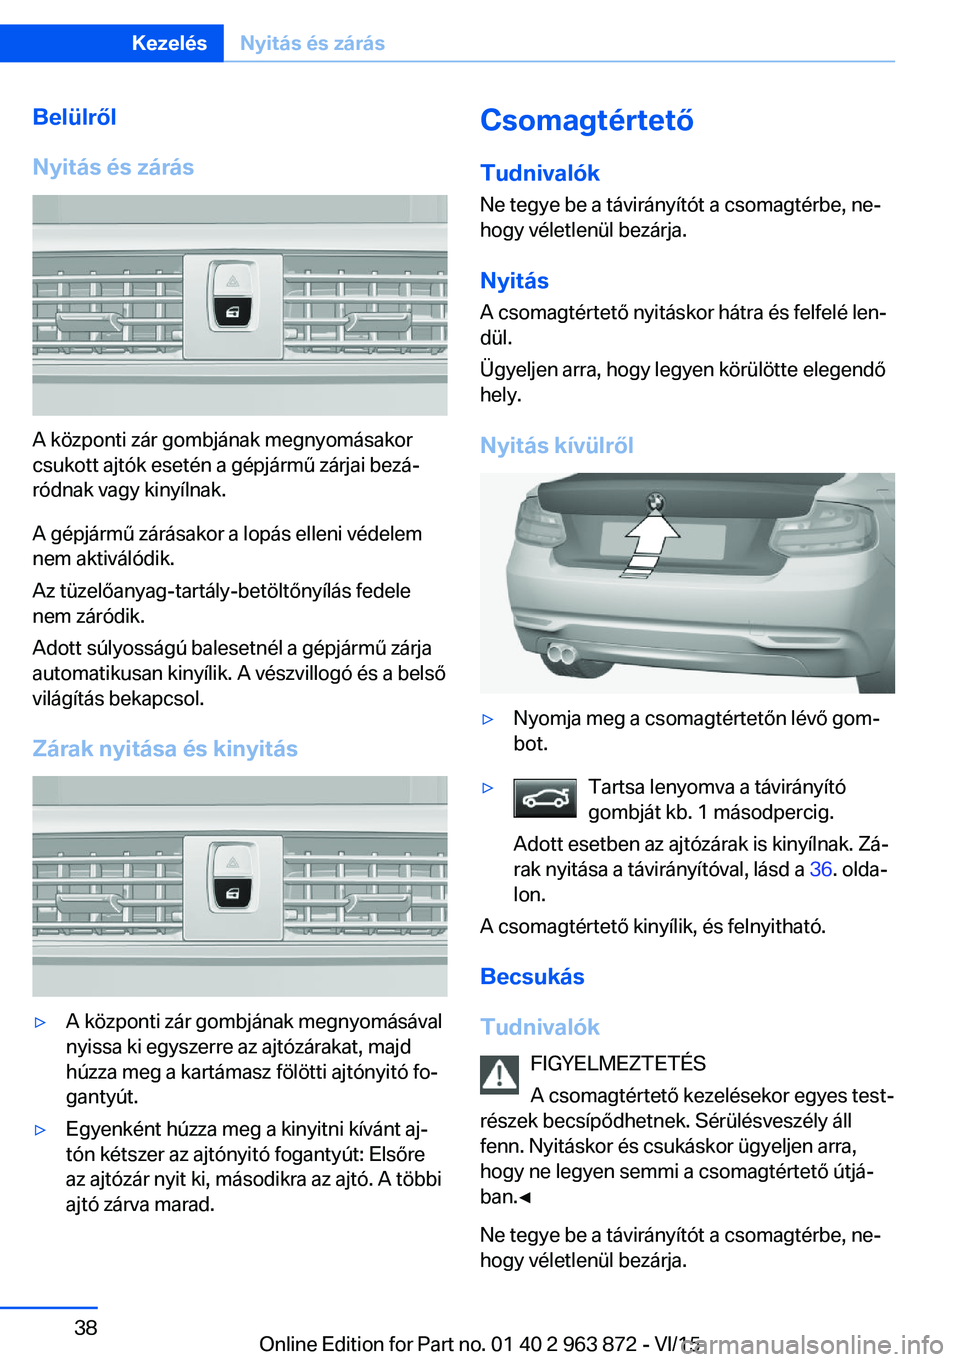 BMW 2 SERIES COUPE 2016  Kezelési útmutató (in Hungarian) Belülről
Nyitás és zárás
A központi zár gombjának megnyomásakor
csukott ajtók esetén a gépjármű zárjai bezá‐
ródnak vagy kinyílnak.
A gépjármű zárásakor a lopás elleni véde